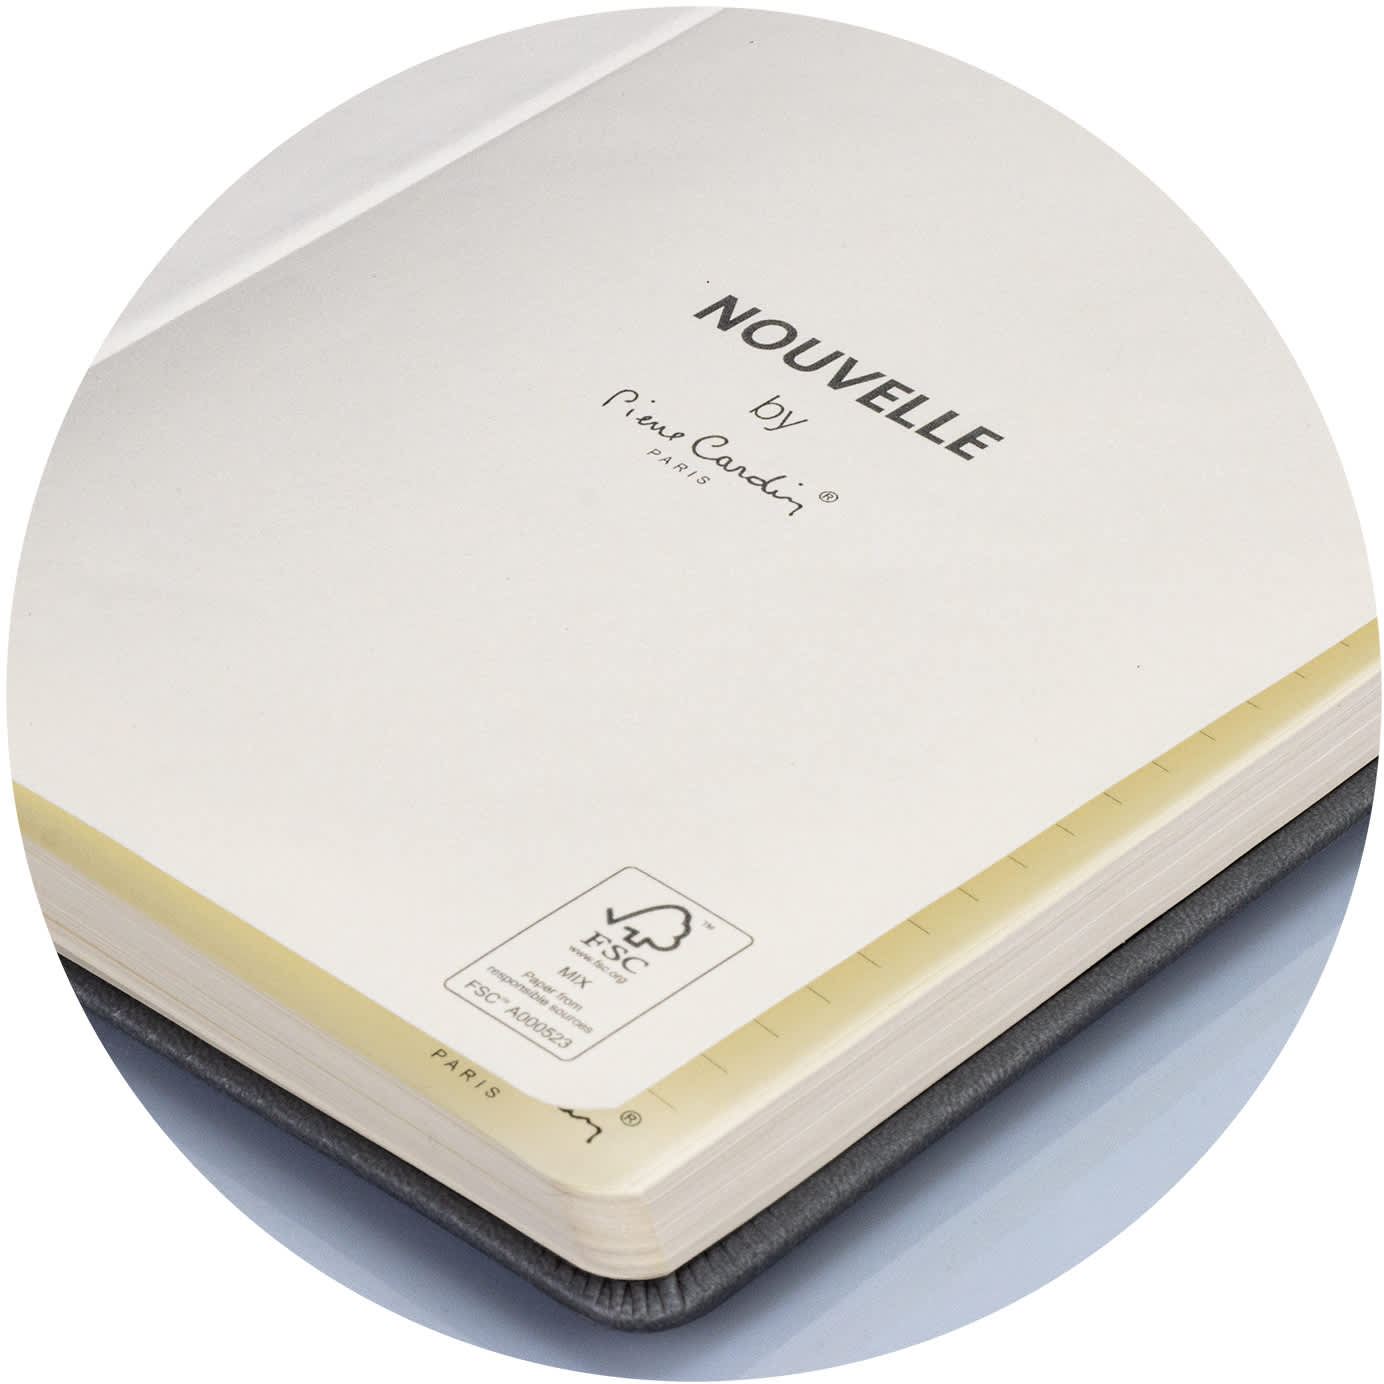 Pierre Cardin Novelle Notebook